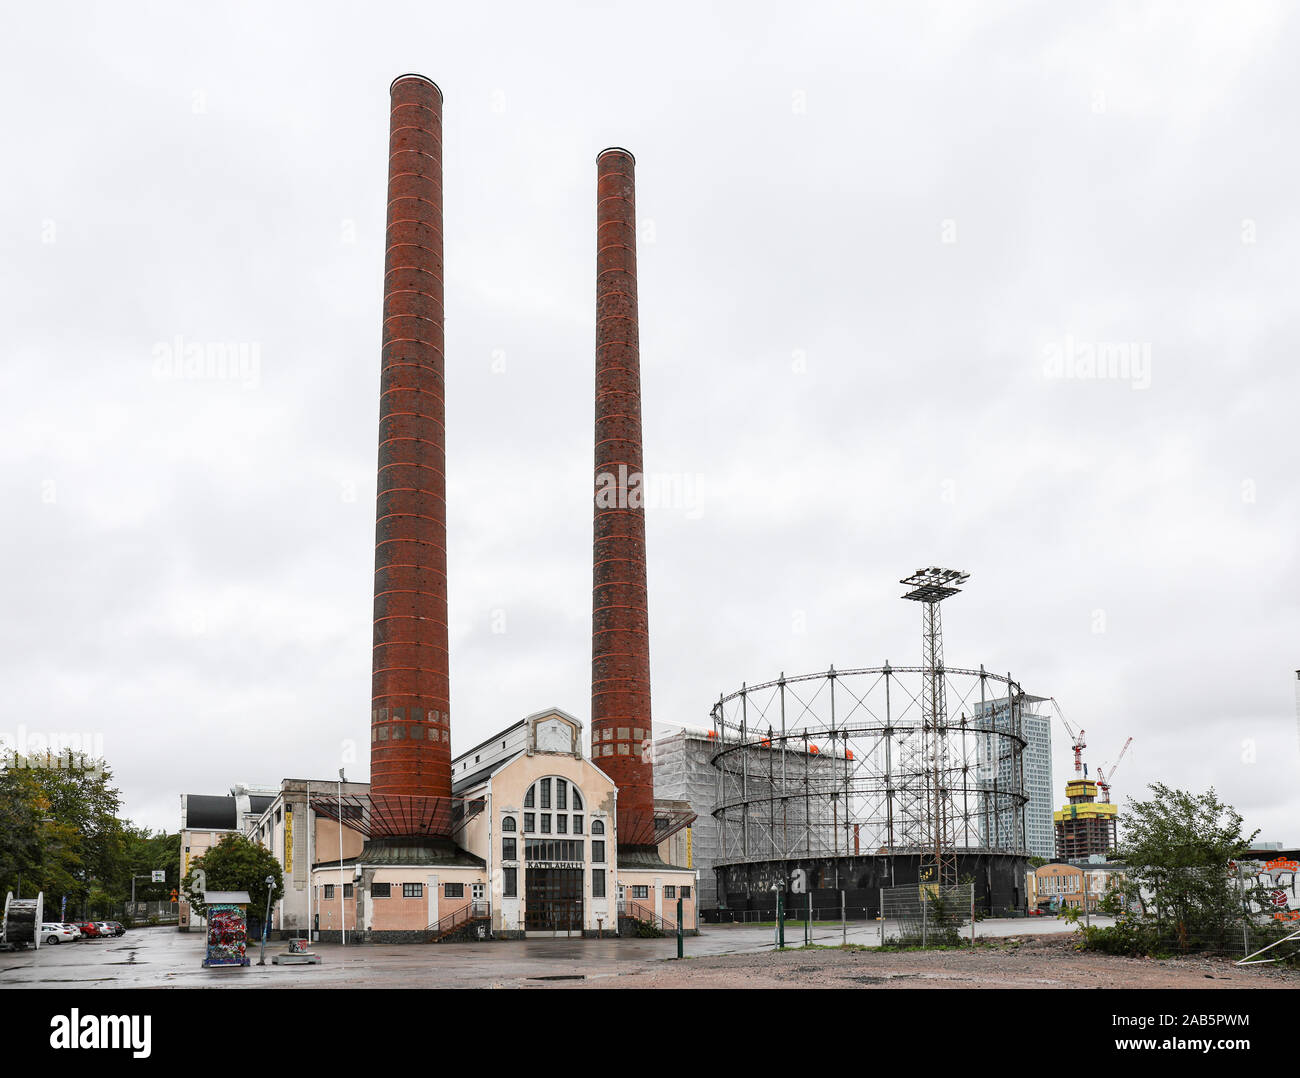 Old Suvilahti gasworks boiler hall in Helsinki, Finland Stock Photo